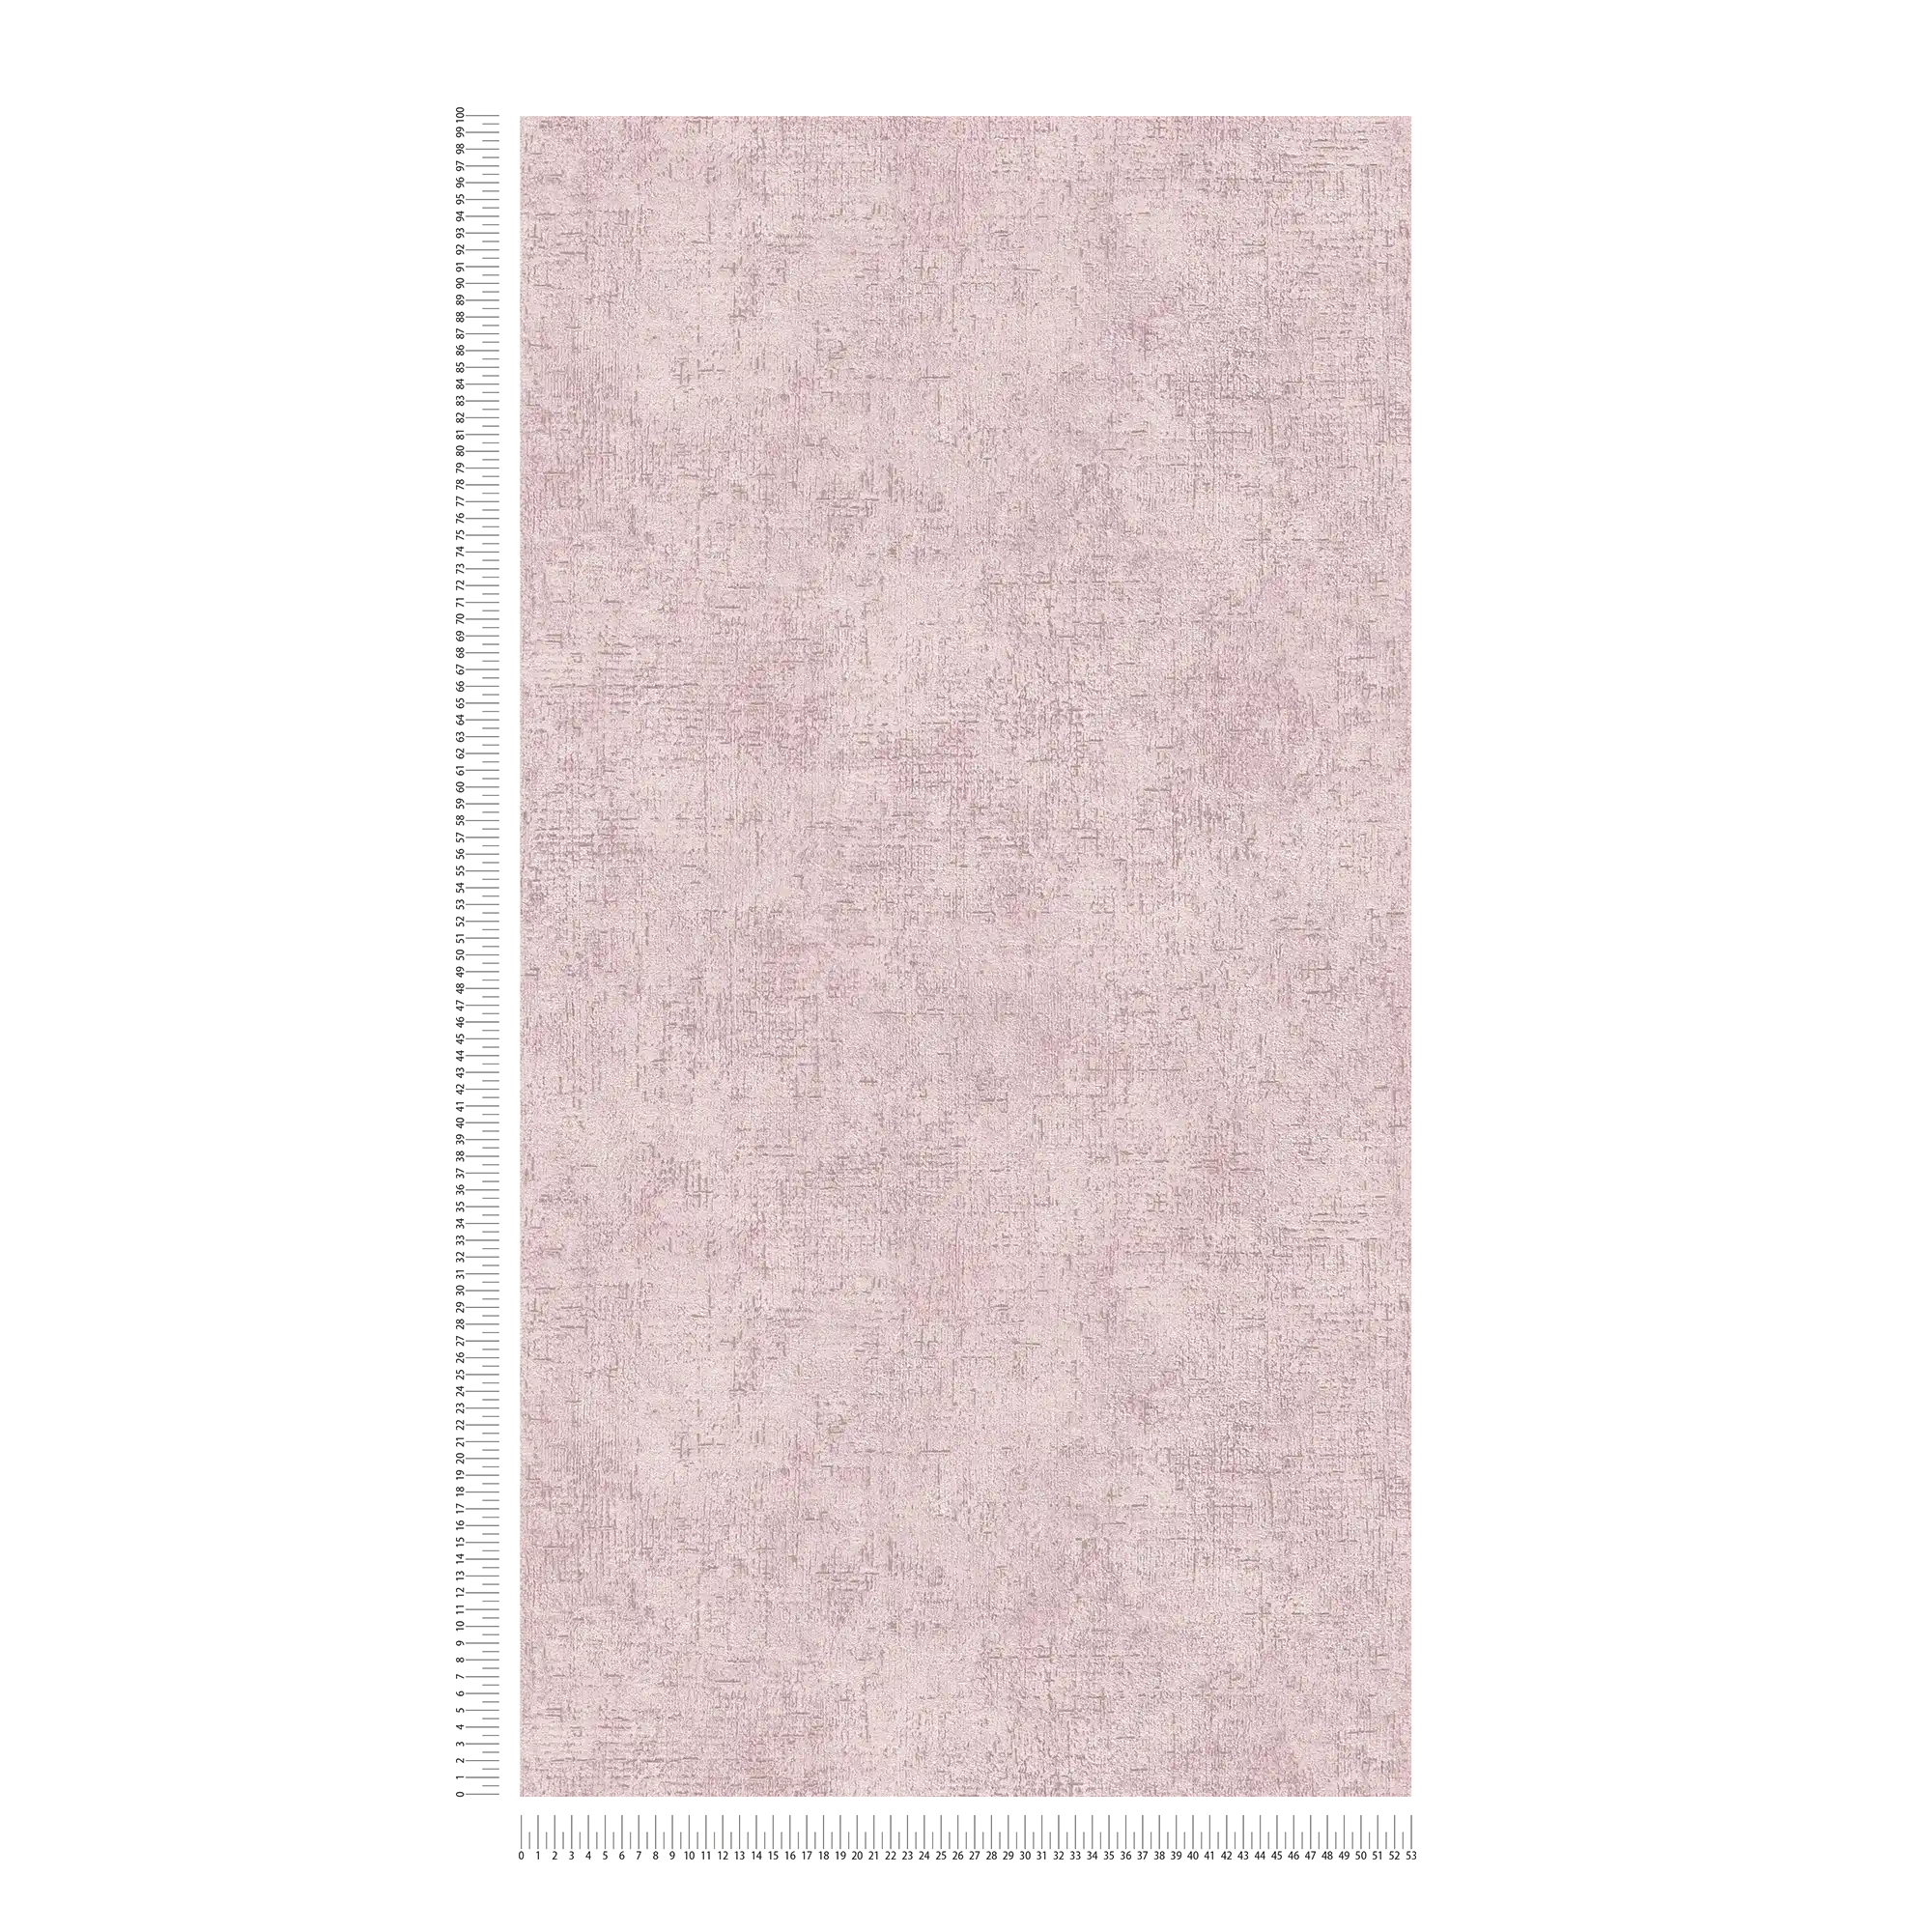             Carta da parati non tessuta struttura rustica in gesso - rosa, lucida
        